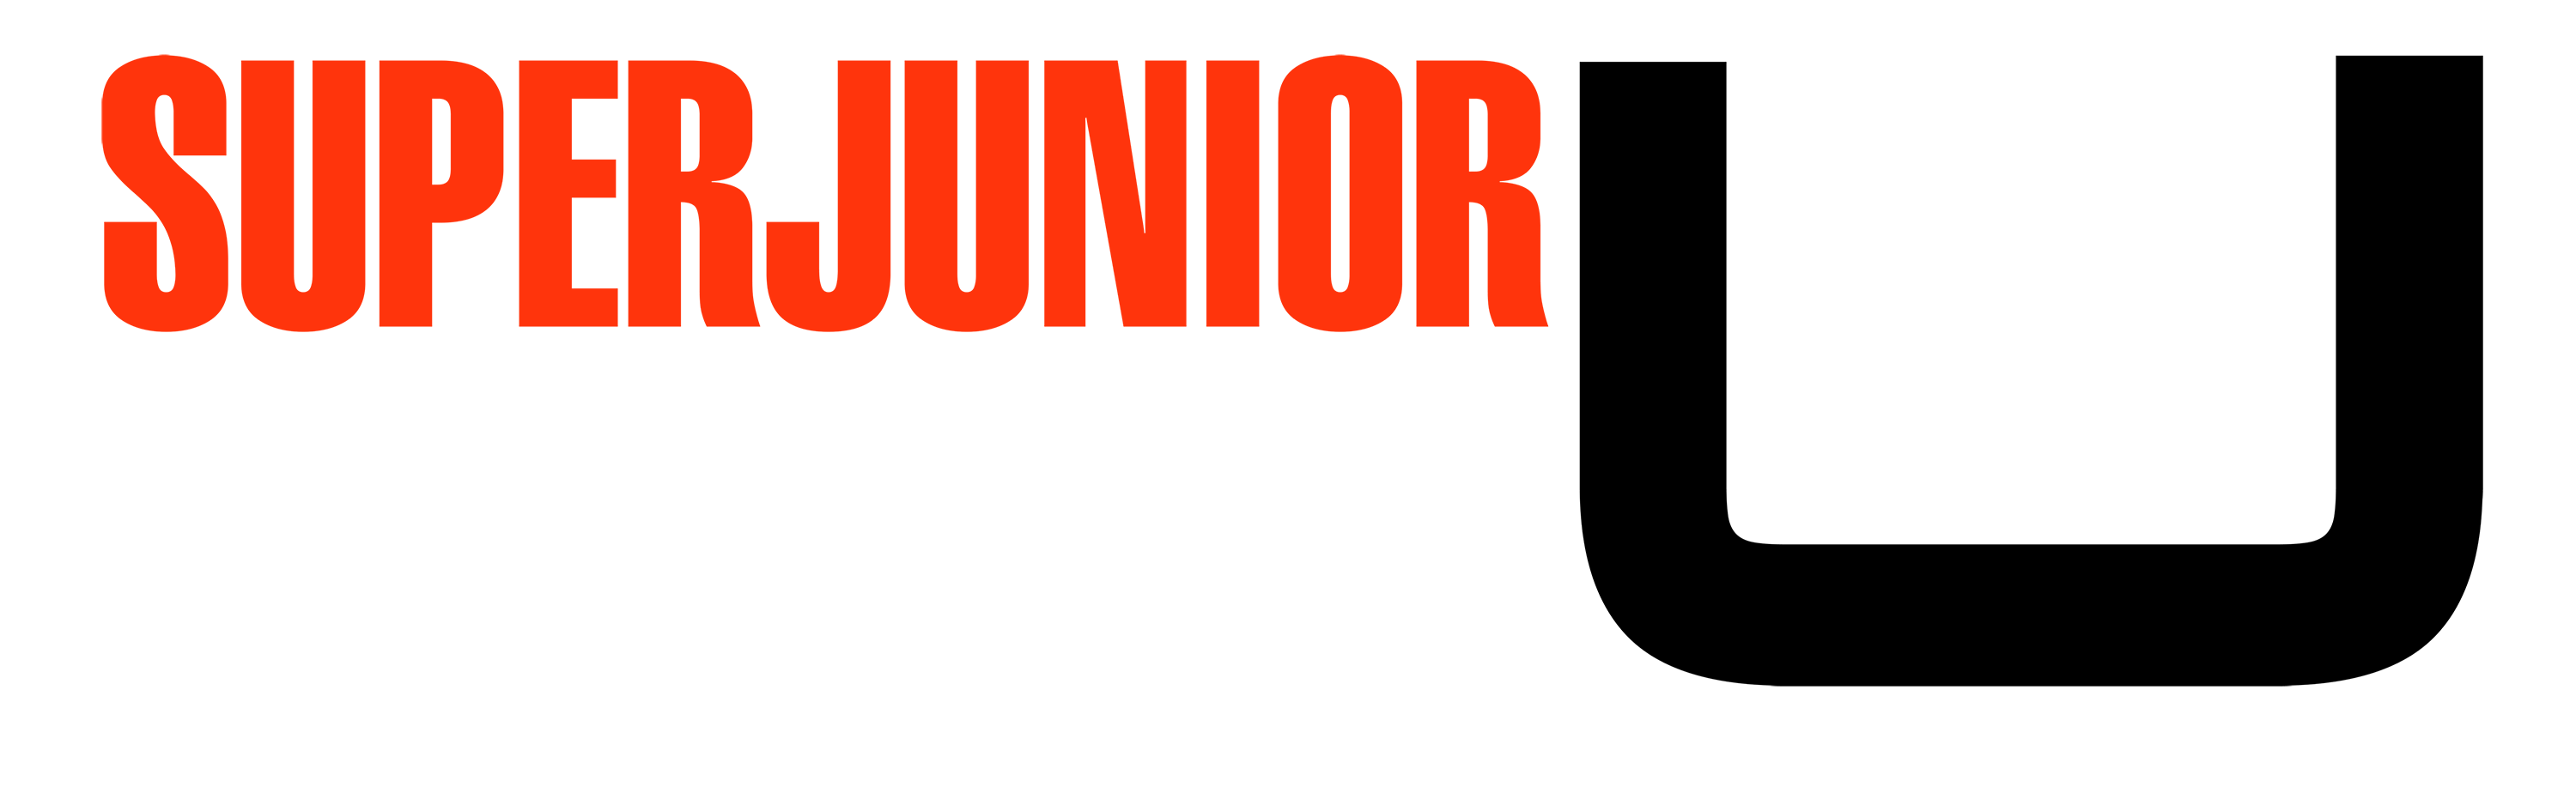 Super Junior first single 'U' logo.